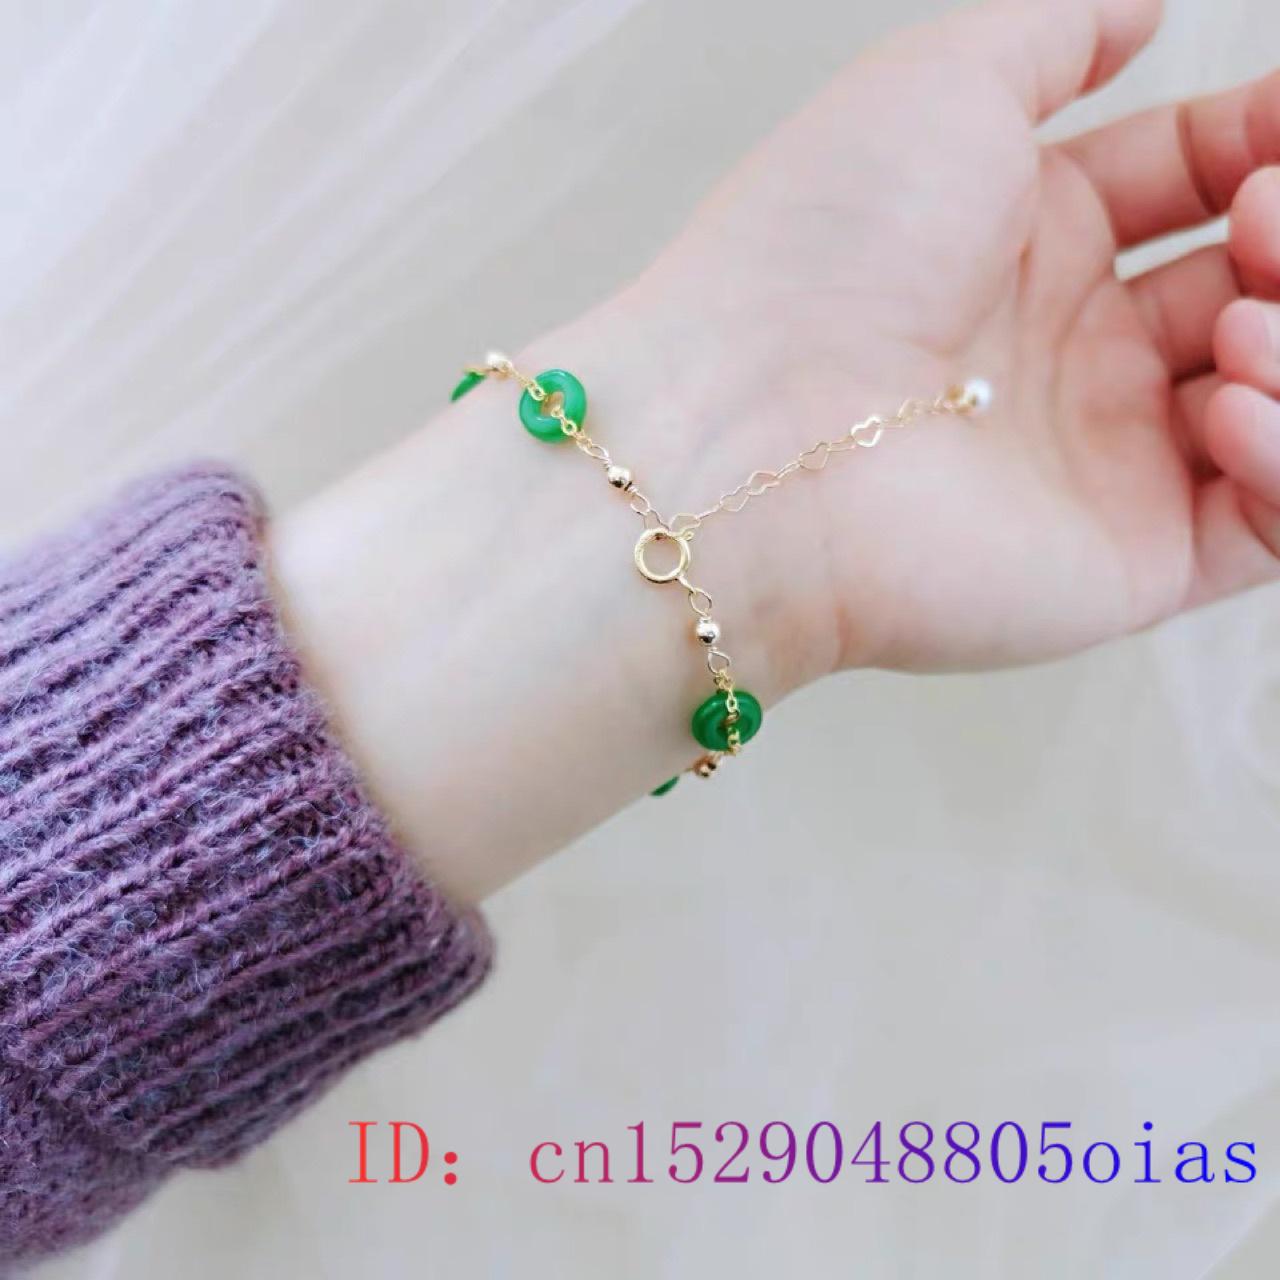 Green Jade Donut Bracelets for Women Bangle Bracelet